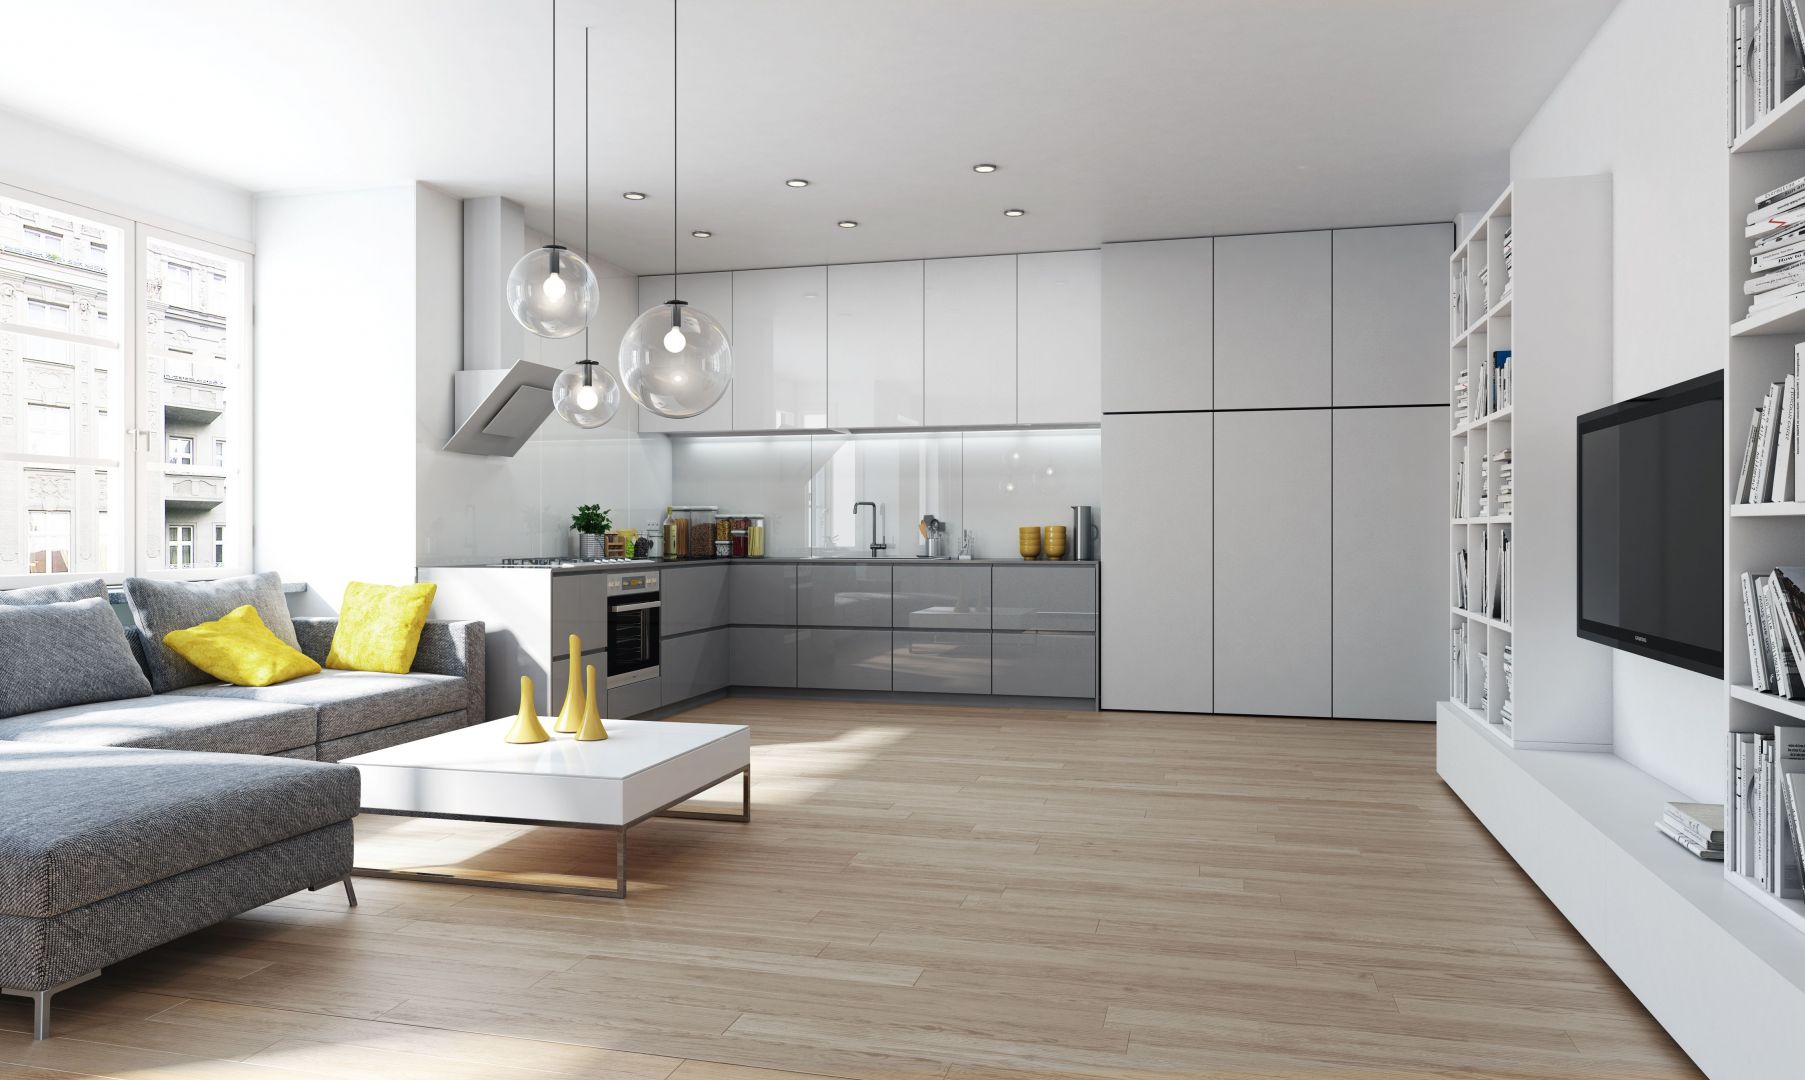 W małych mieszkaniach powinny przeważać jasne barwy, które optycznie powiększają przestrzeń - zarówno salonu, jak i kuchni. Fot. Komandor